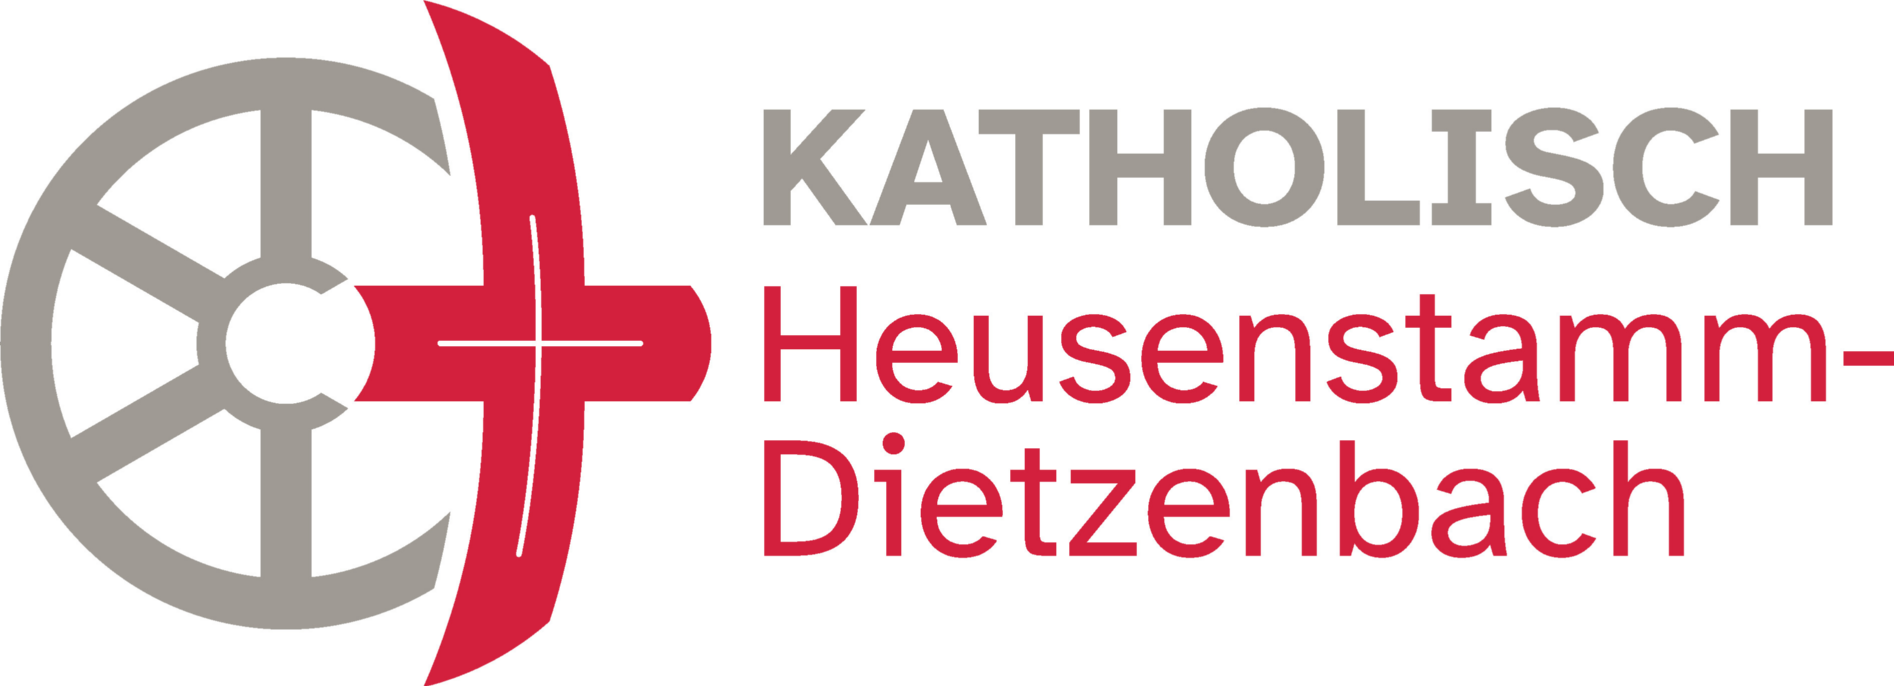 Heusenstamm-Dietzenbach_rgb_classic-gross